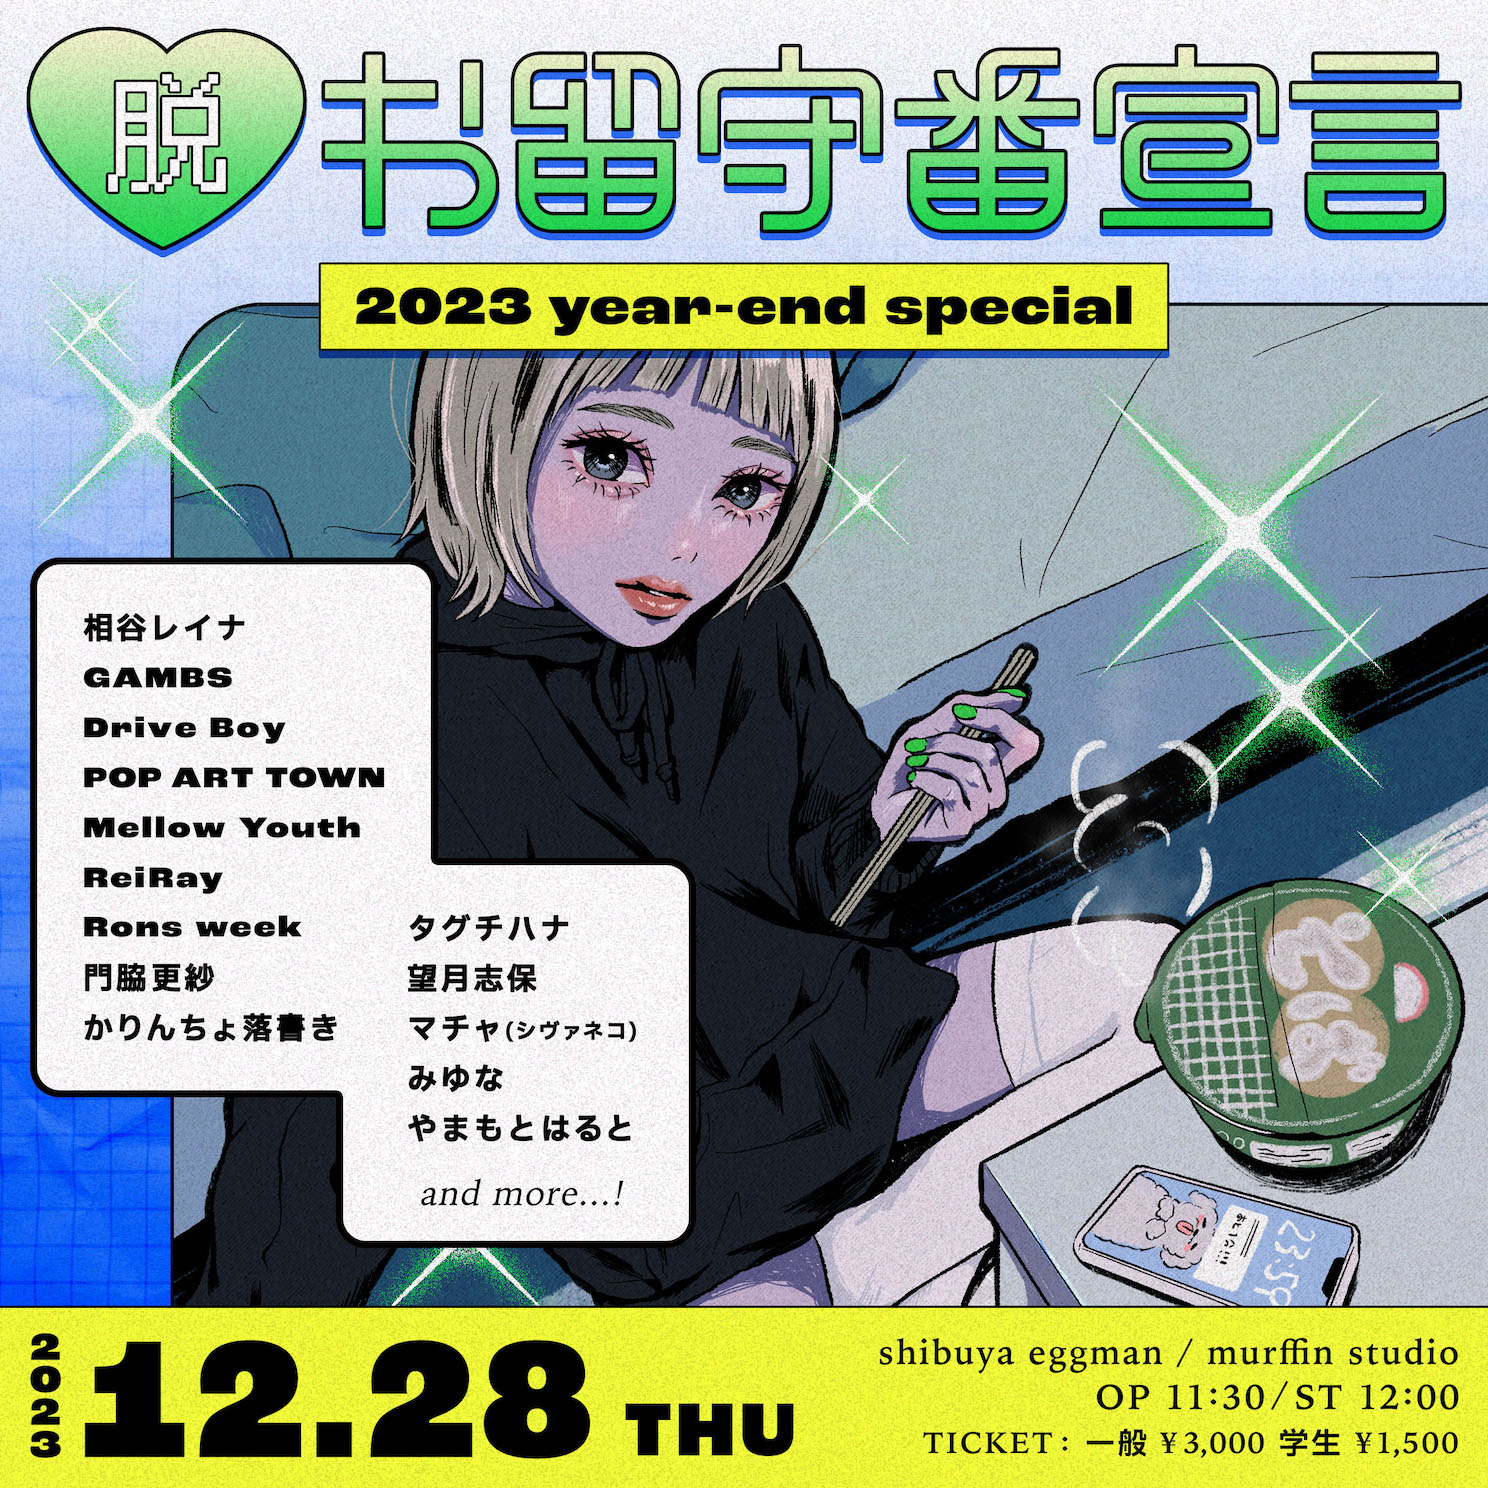 脱・お留守番宣言 2023 year-end special